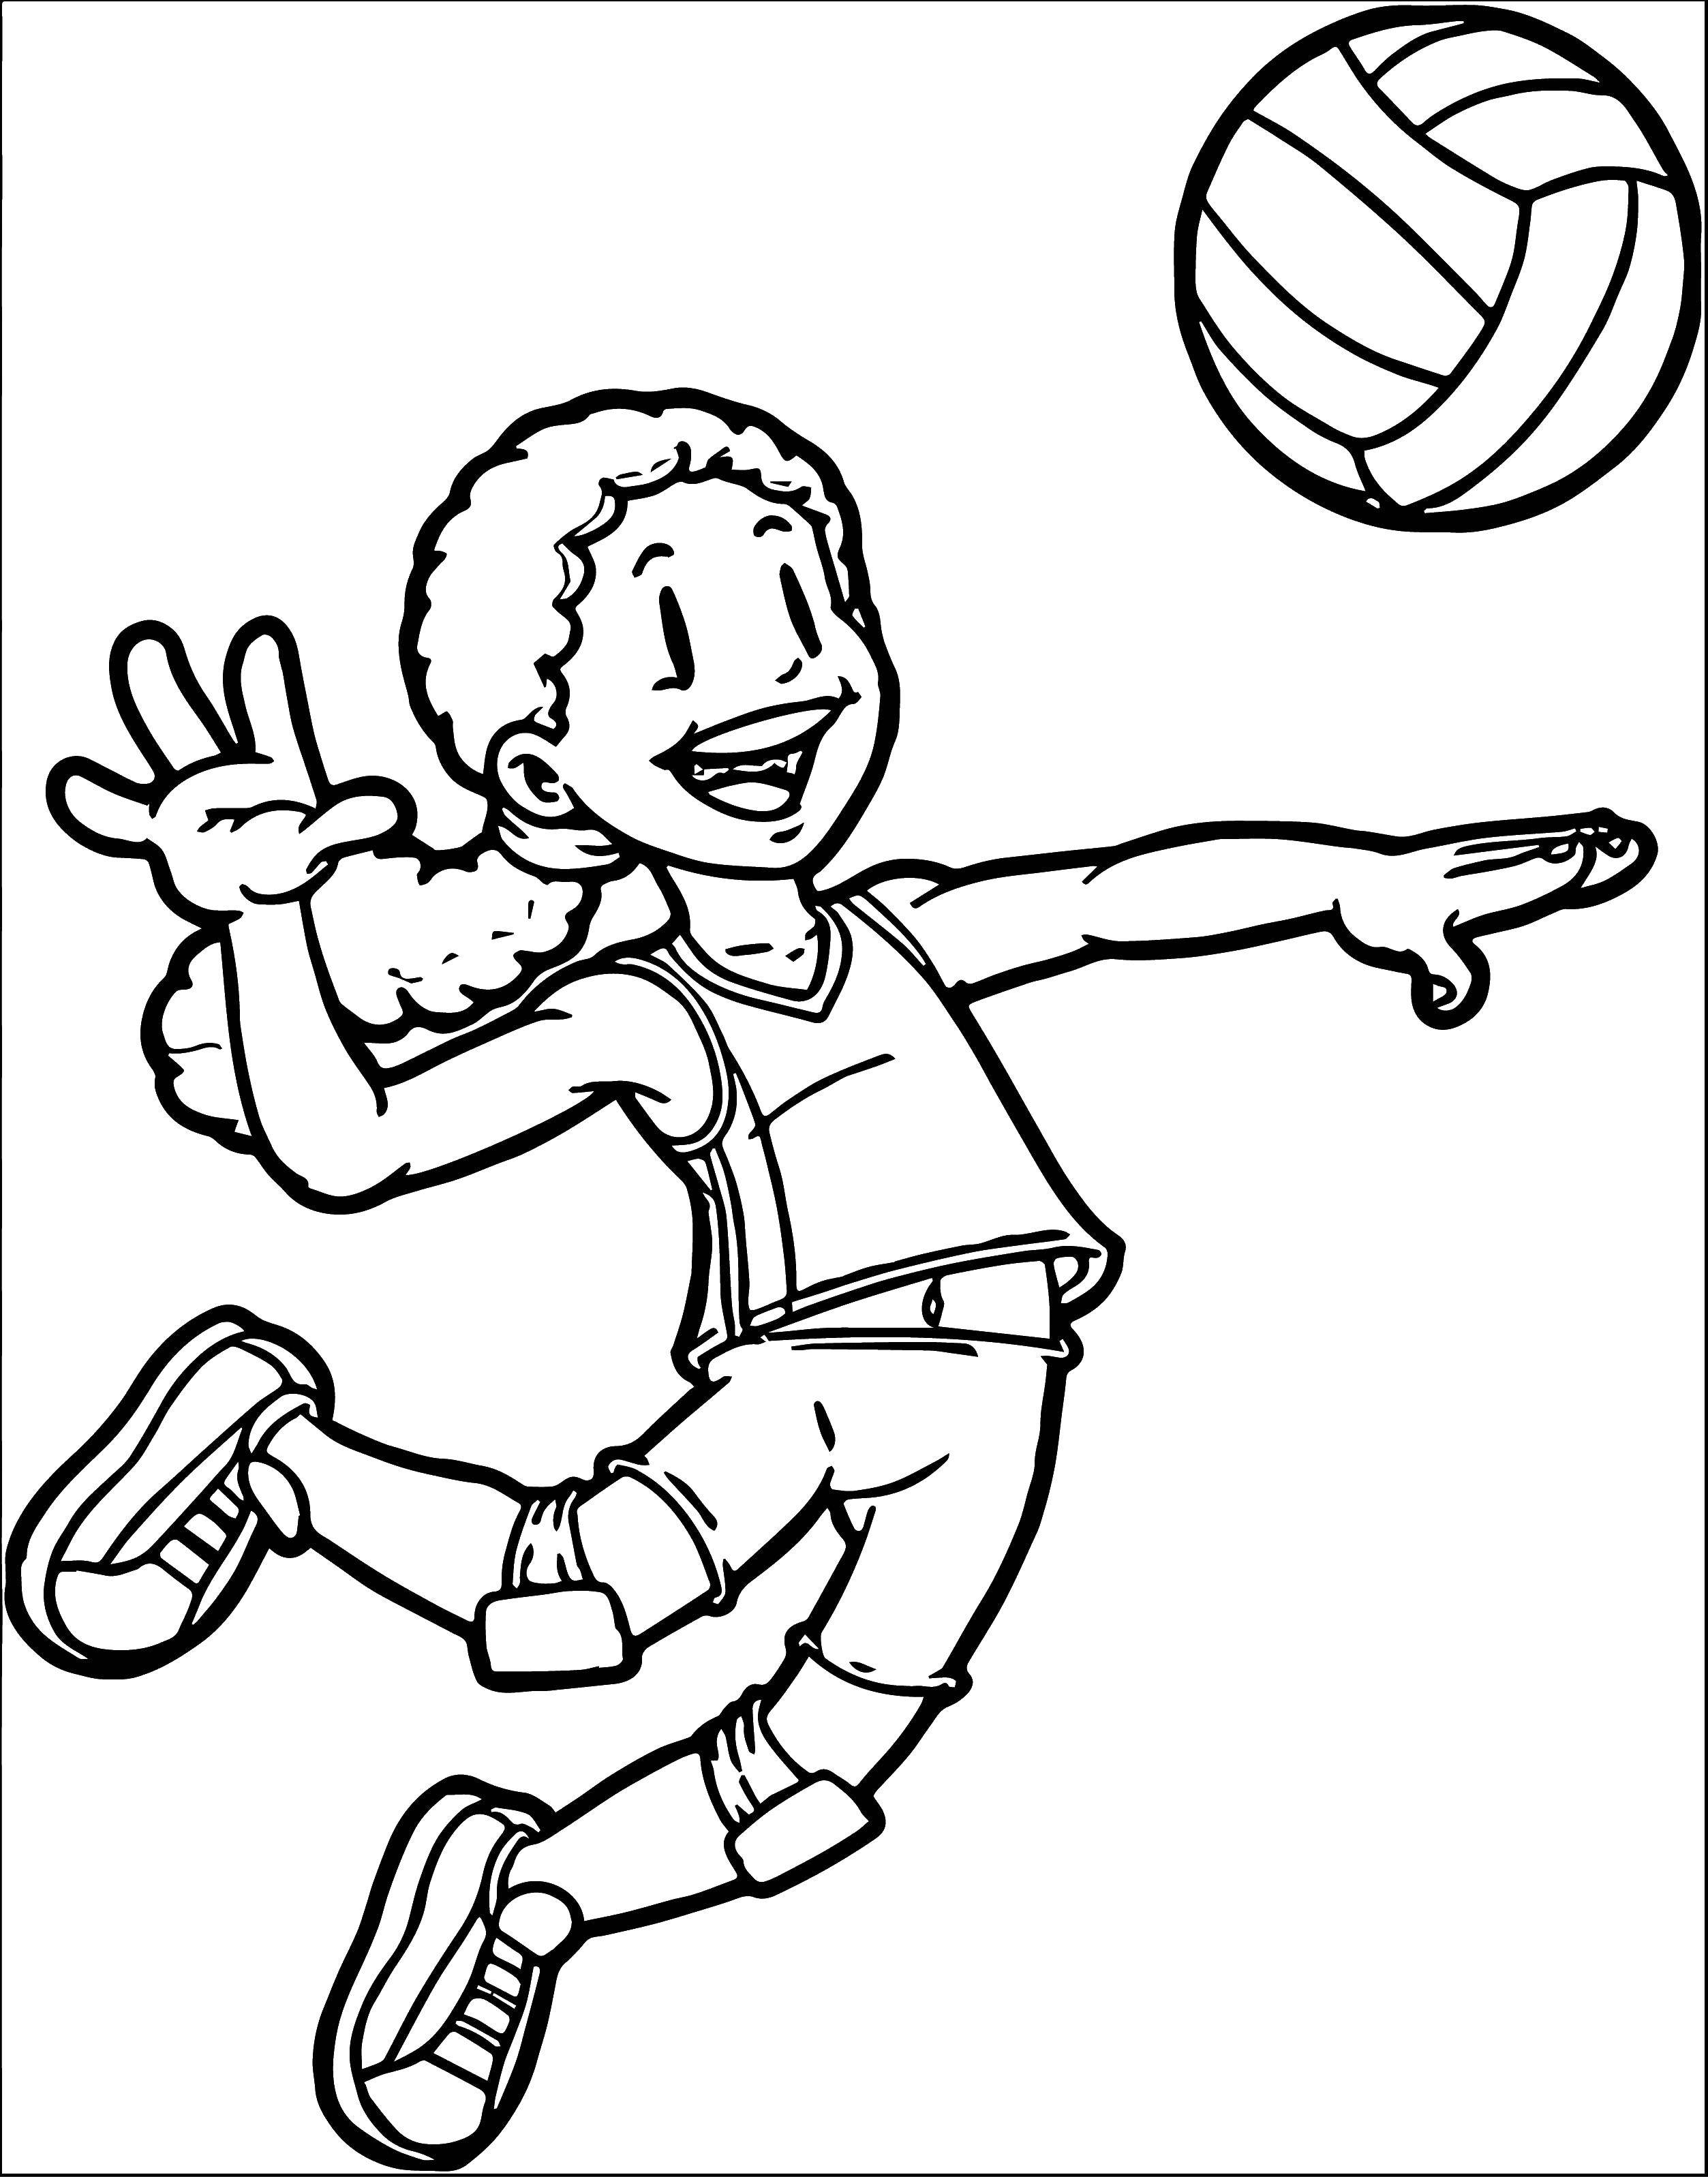 Название: Раскраска Девочка играет в волейбол. Категория: Дети играют. Теги: девочка, мяч.